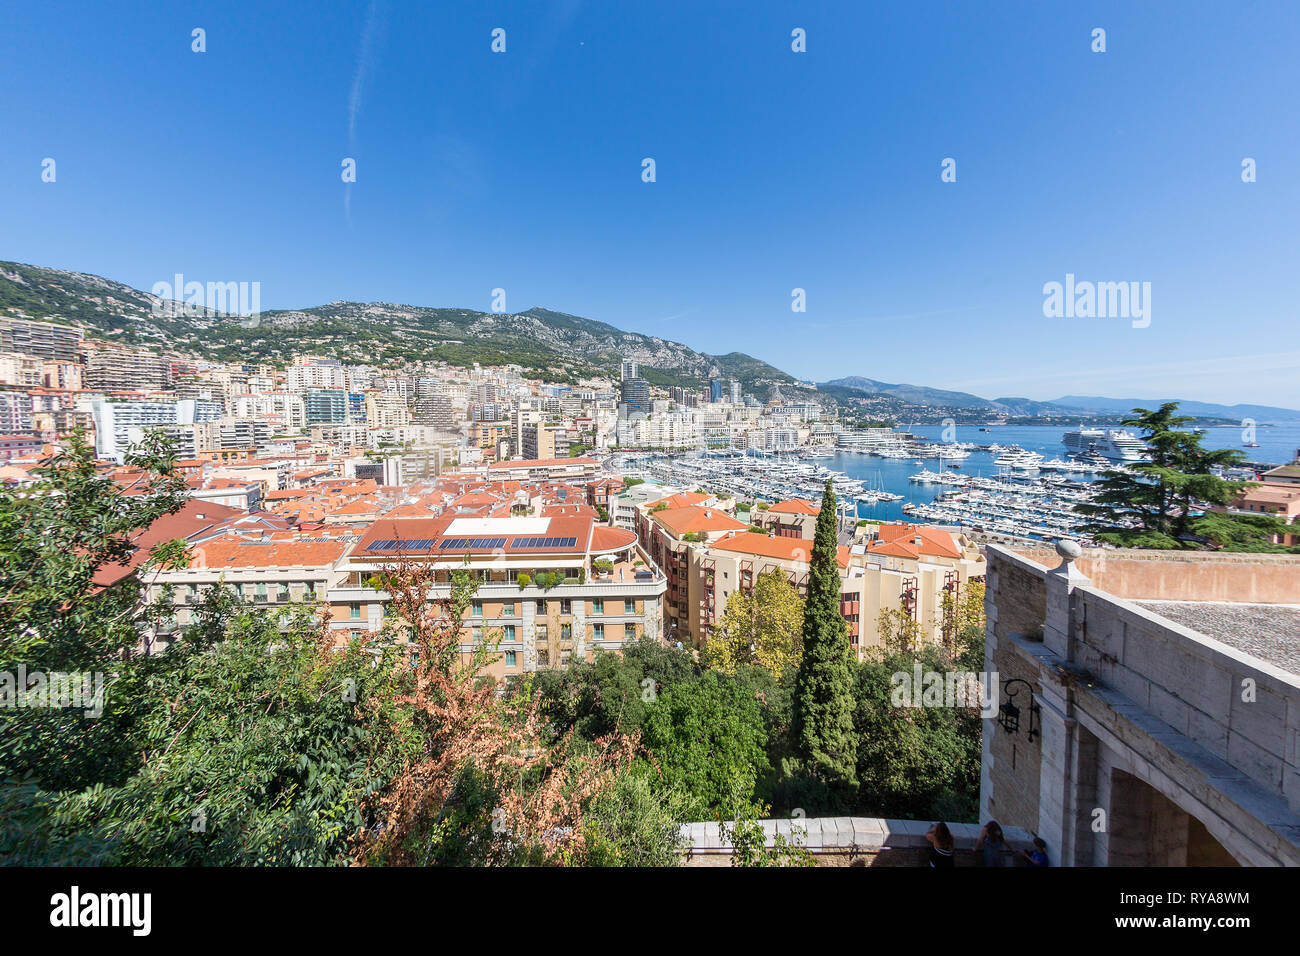 Blick auf den Hafen und Skyline von Monte Carlo, Monaco, 29.08.2018 Bildnachweis: Mario Hommes / HH-Photography Stock Photo